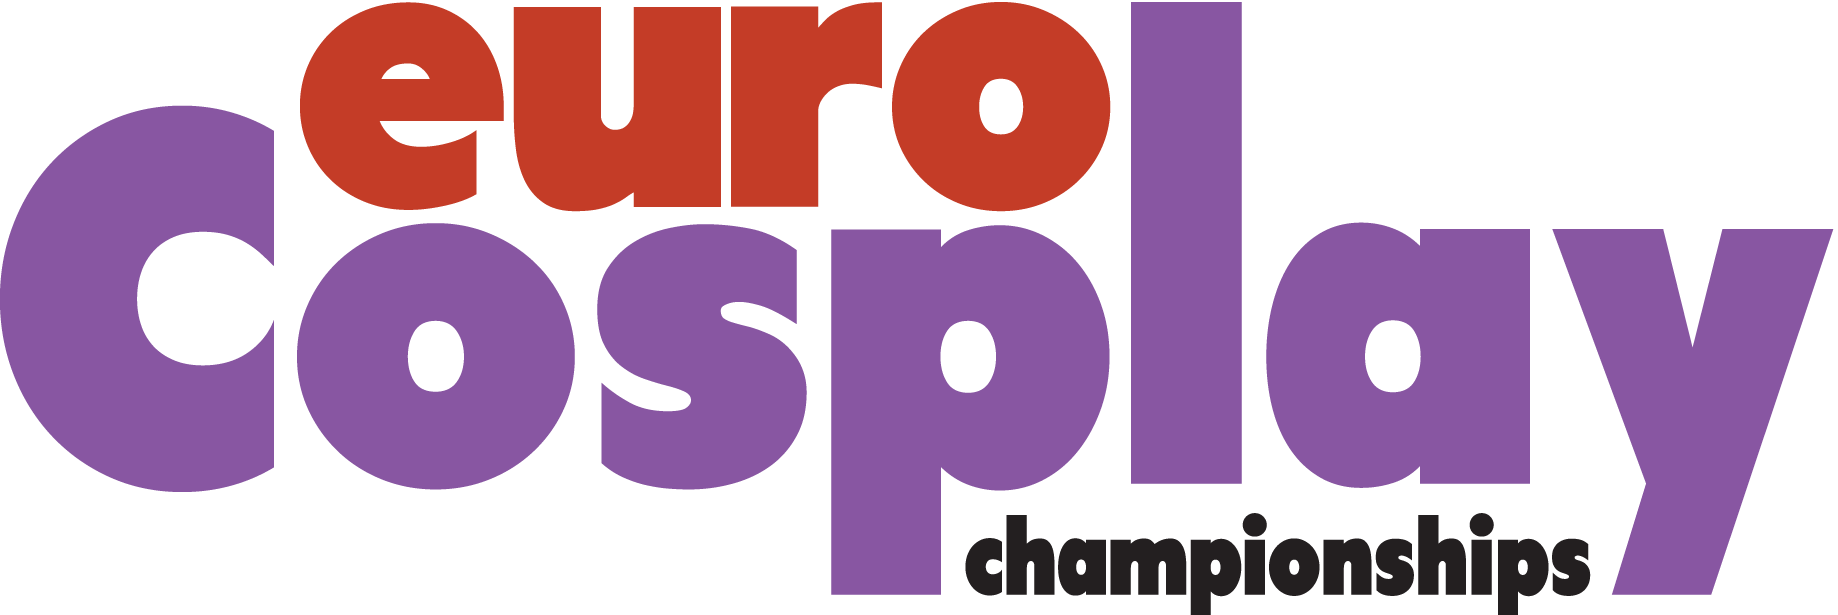 EuroCosplay Championships